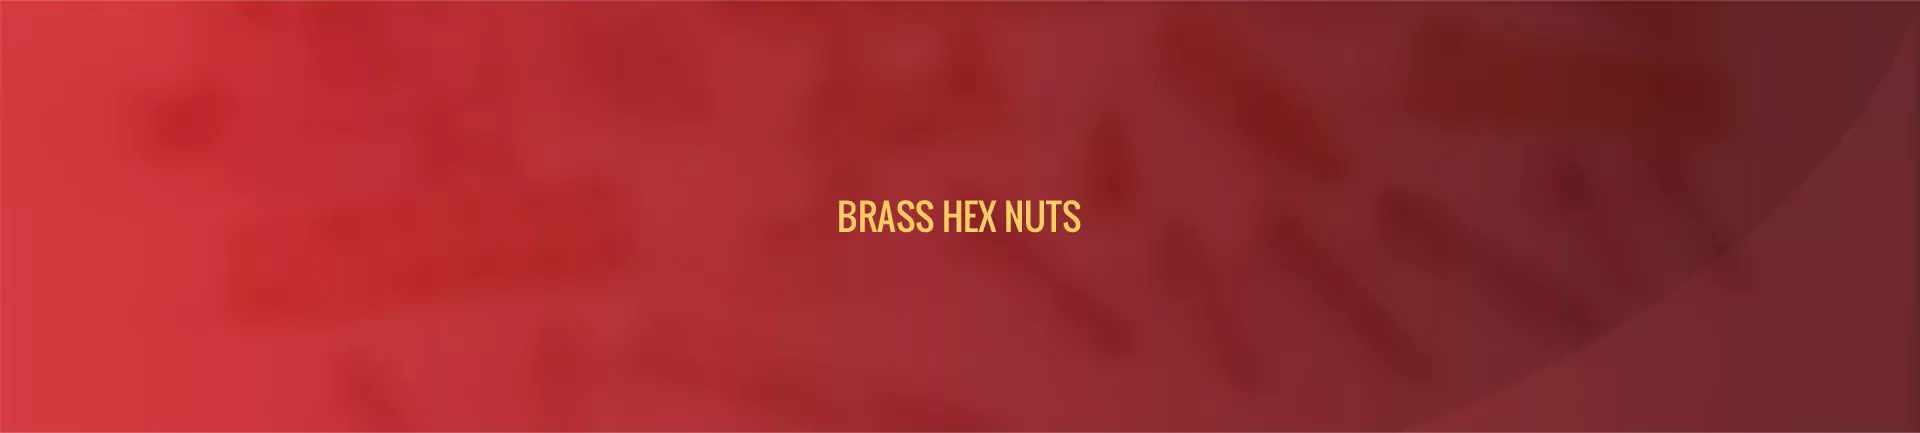 brass-hex-nuts-banner